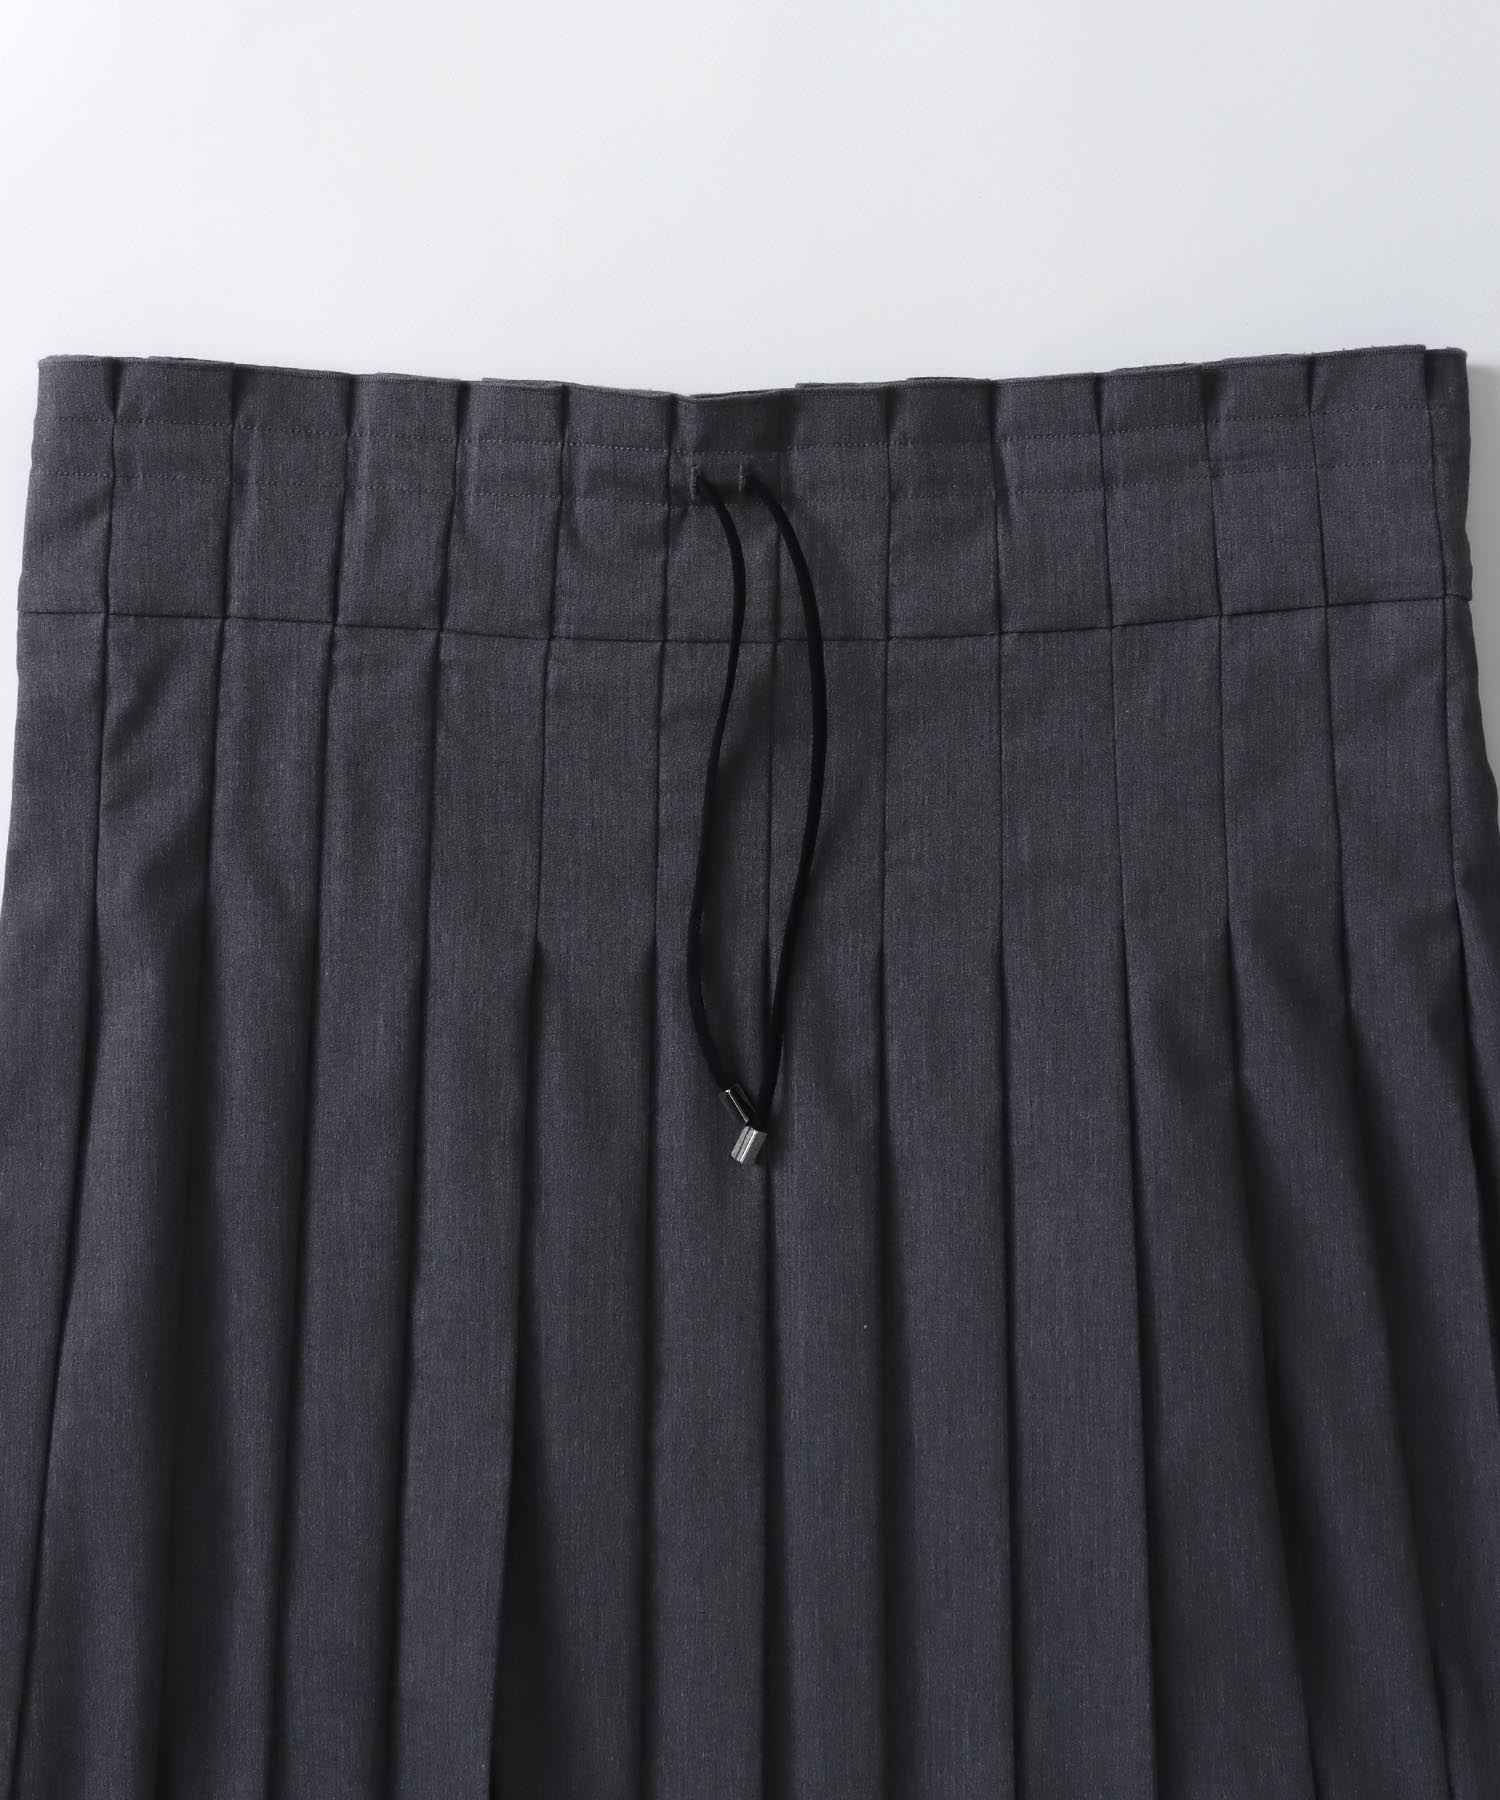 school pleats low waist skirt